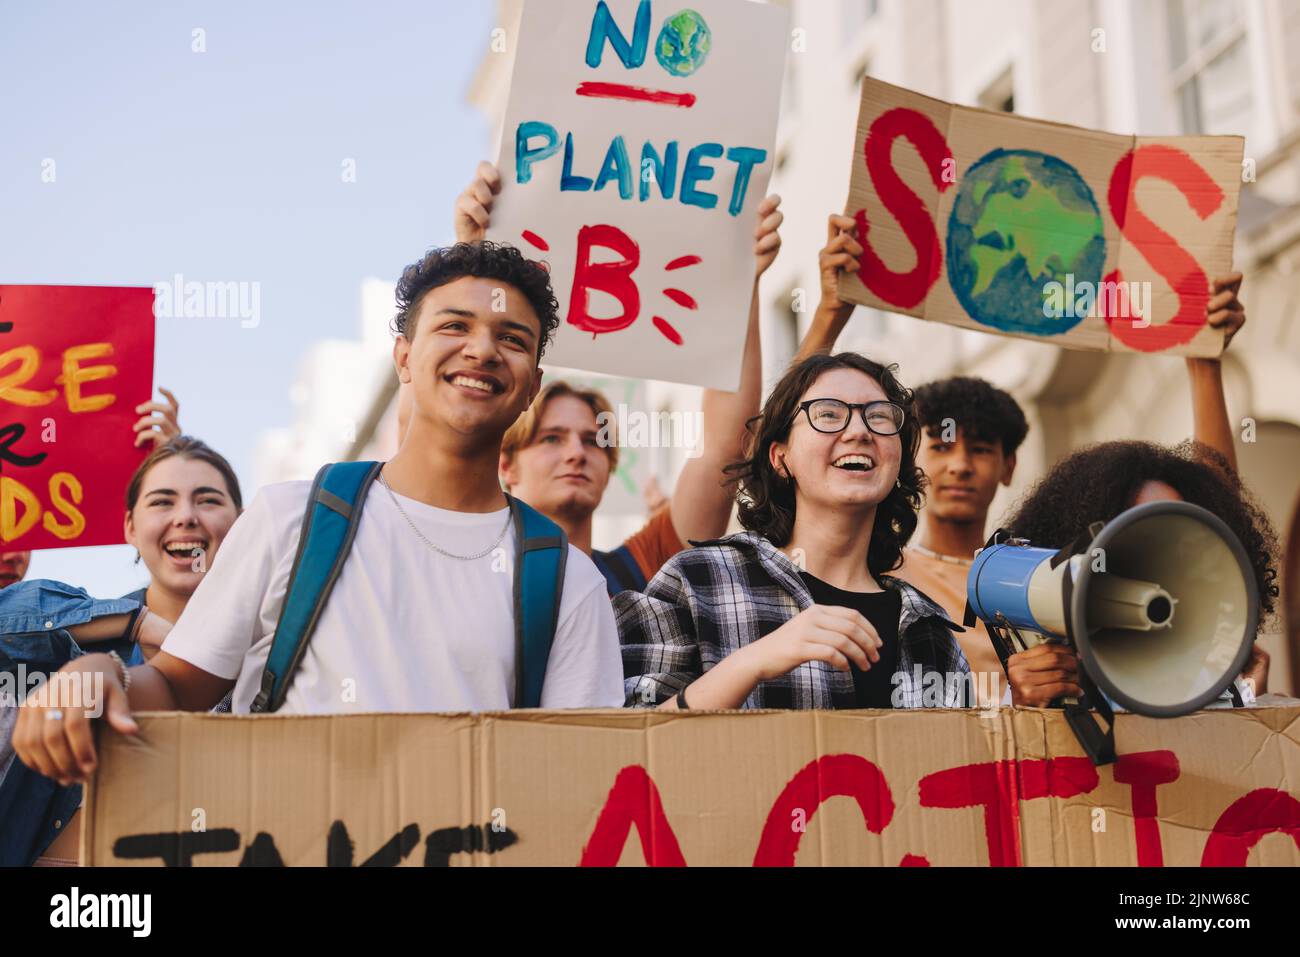 Activisme environnemental de la génération Z. Des jeunes heureux tenant des affiches et des bannières tout en marchant contre le changement climatique. Jeunes multiculturels activis Banque D'Images